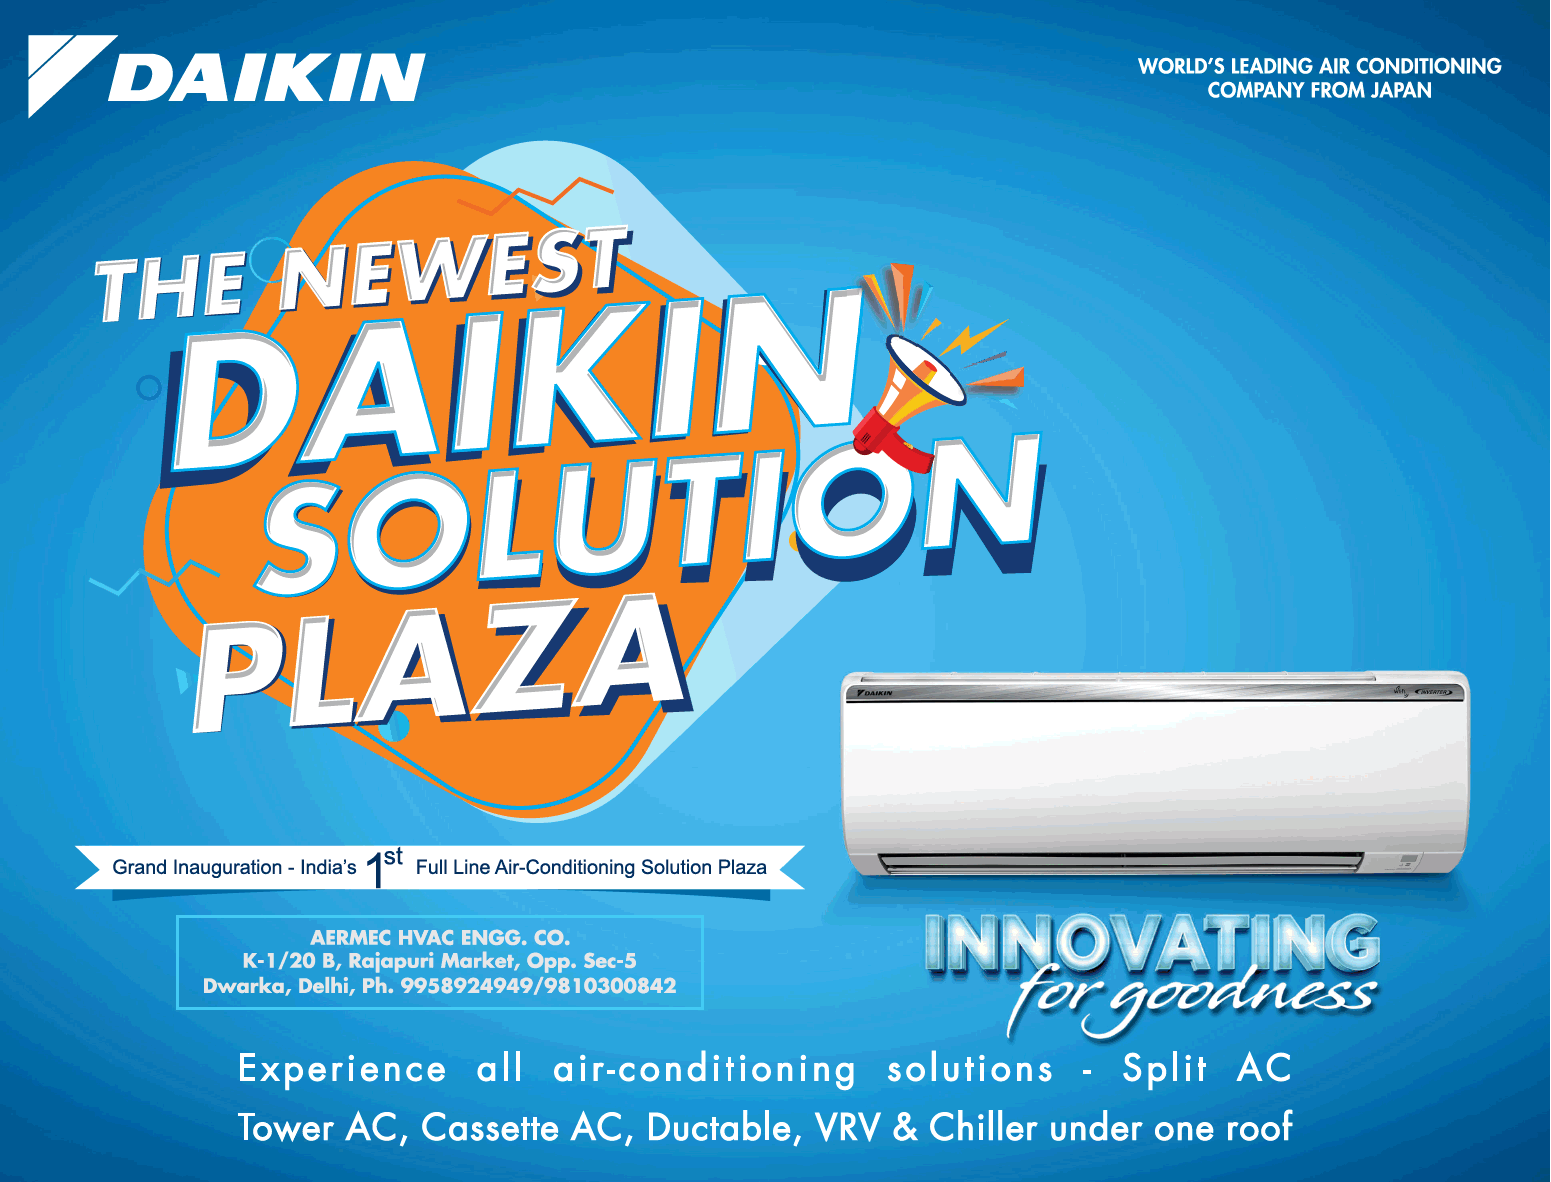 Daikin Air Conditioner The Newest Daikin Solution Plaza Ad Advert Gallery